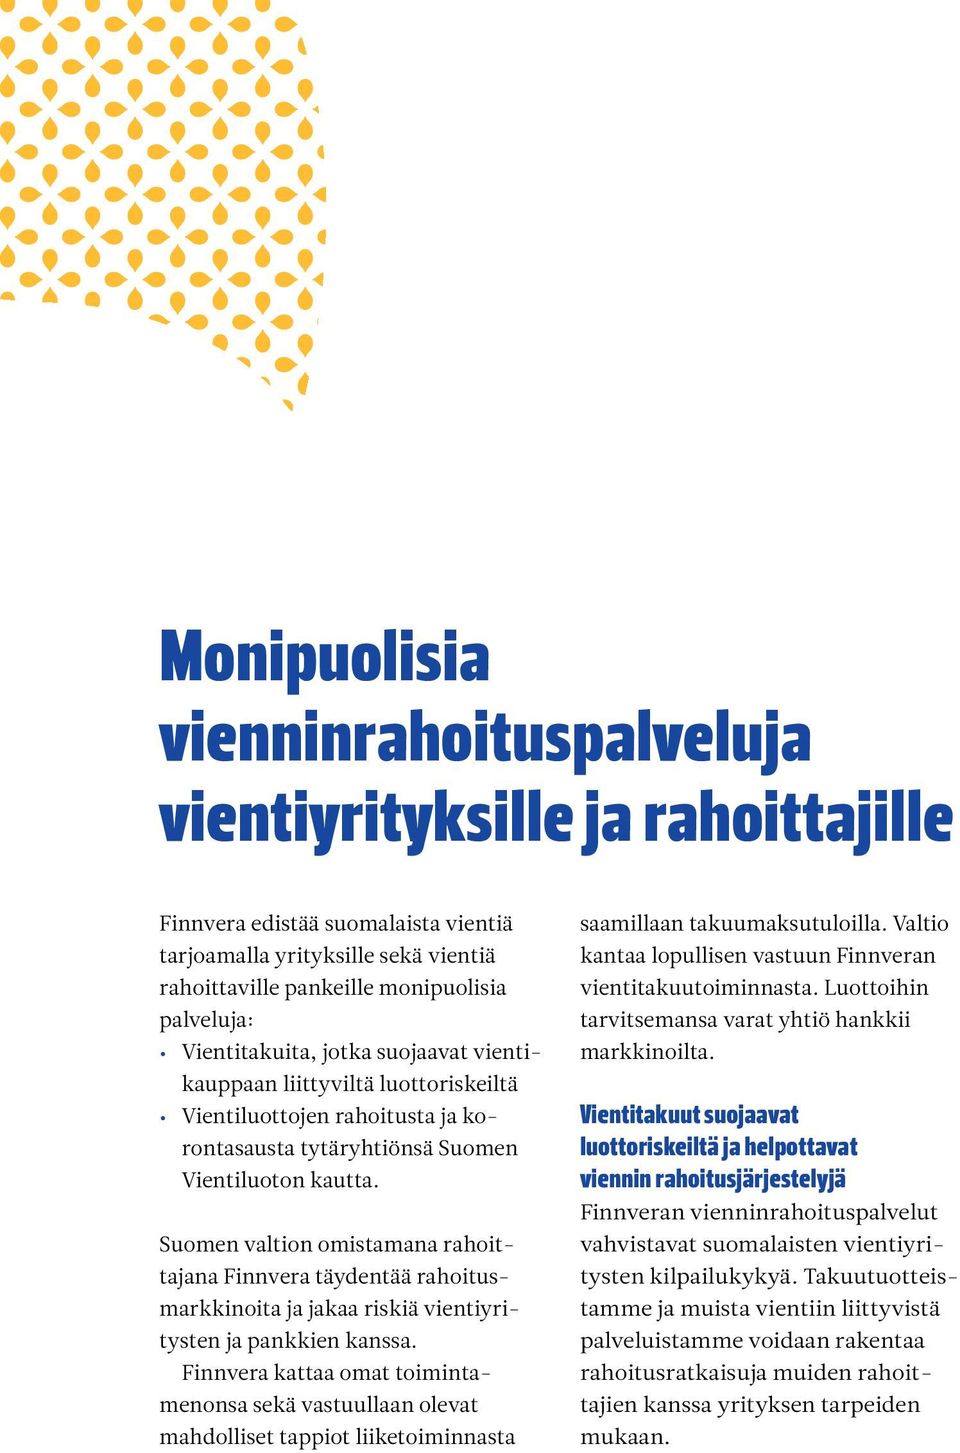 Suomen valtion omistamana rahoittajana Finnvera täydentää rahoitusmarkkinoita ja jakaa riskiä vientiyritysten ja pankkien kanssa.